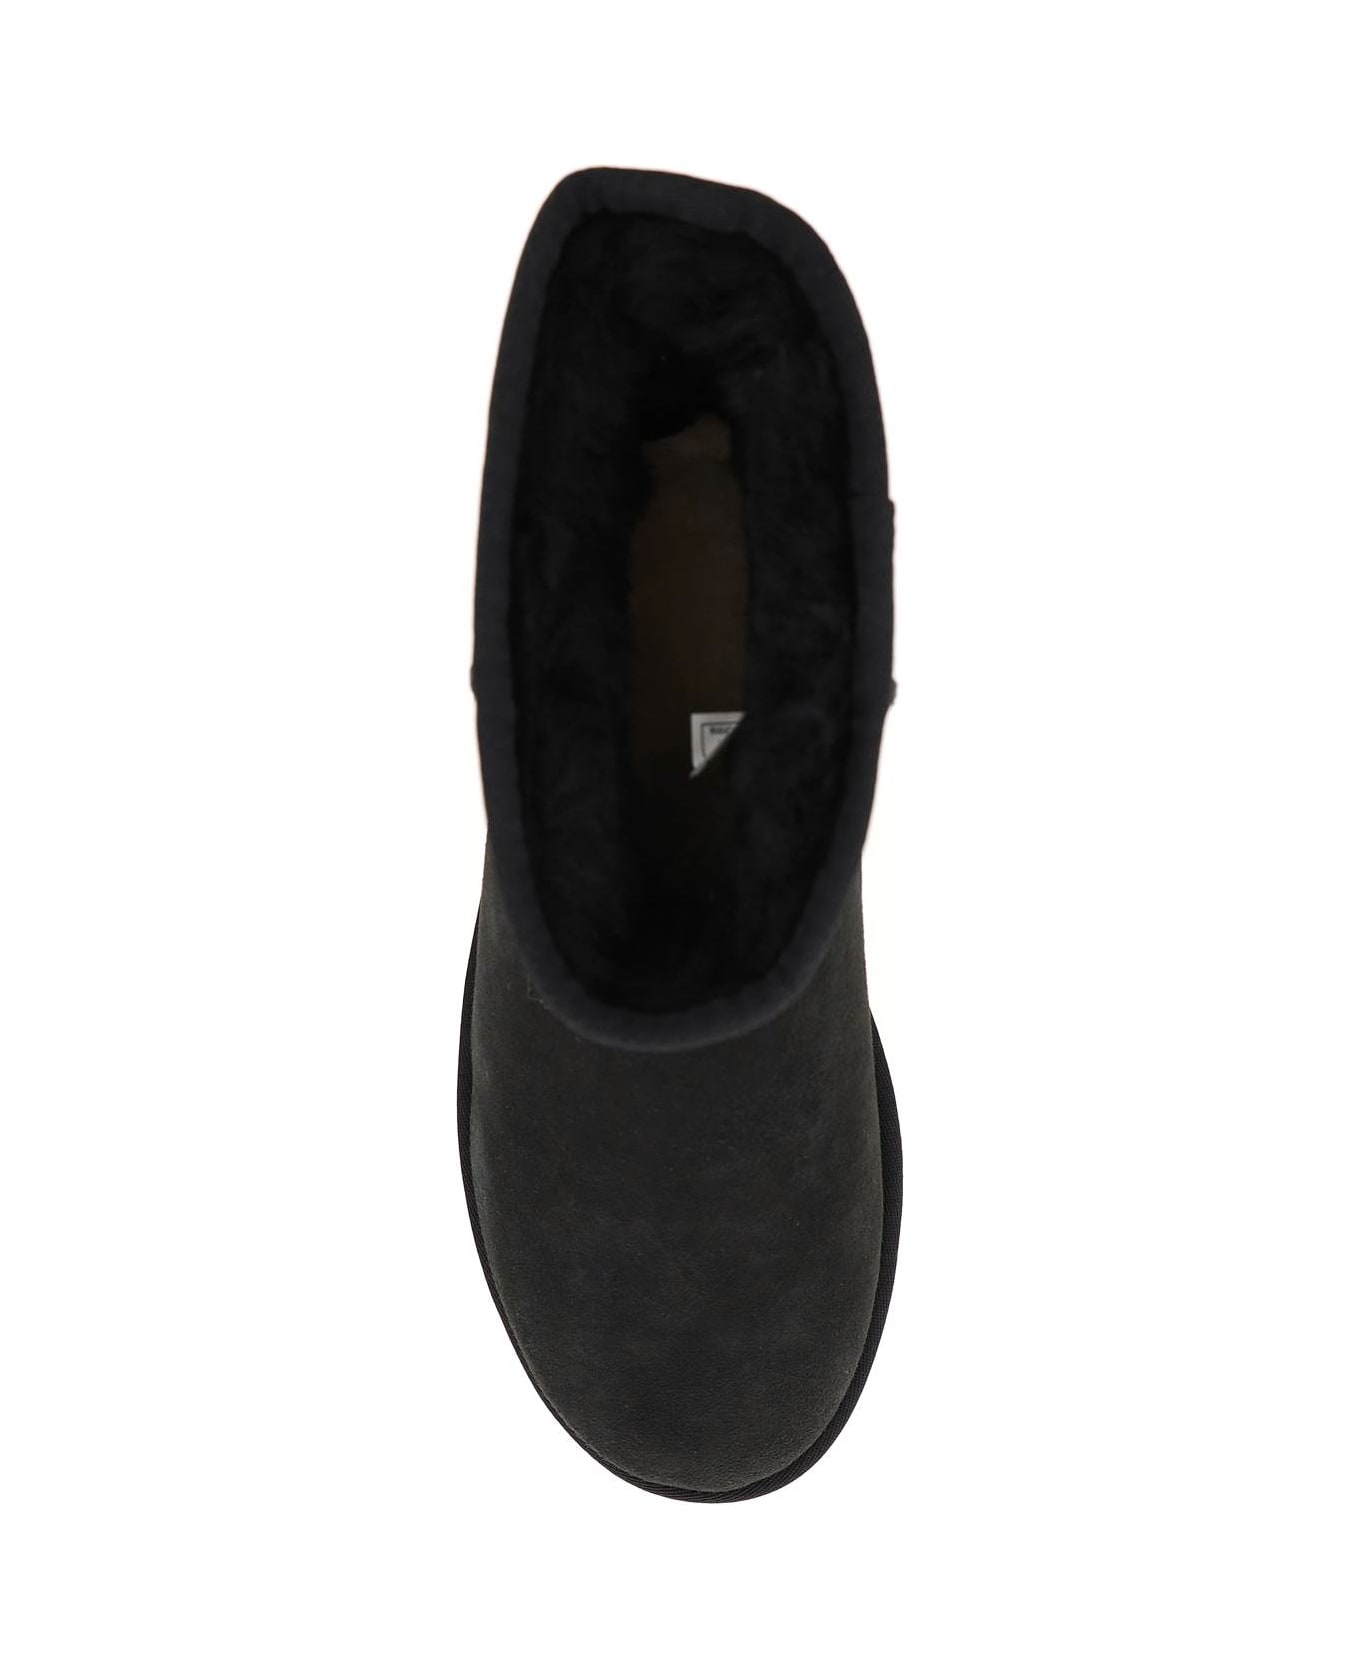 UGG Classic Mini Ii Ankle Boots - Black ブーツ